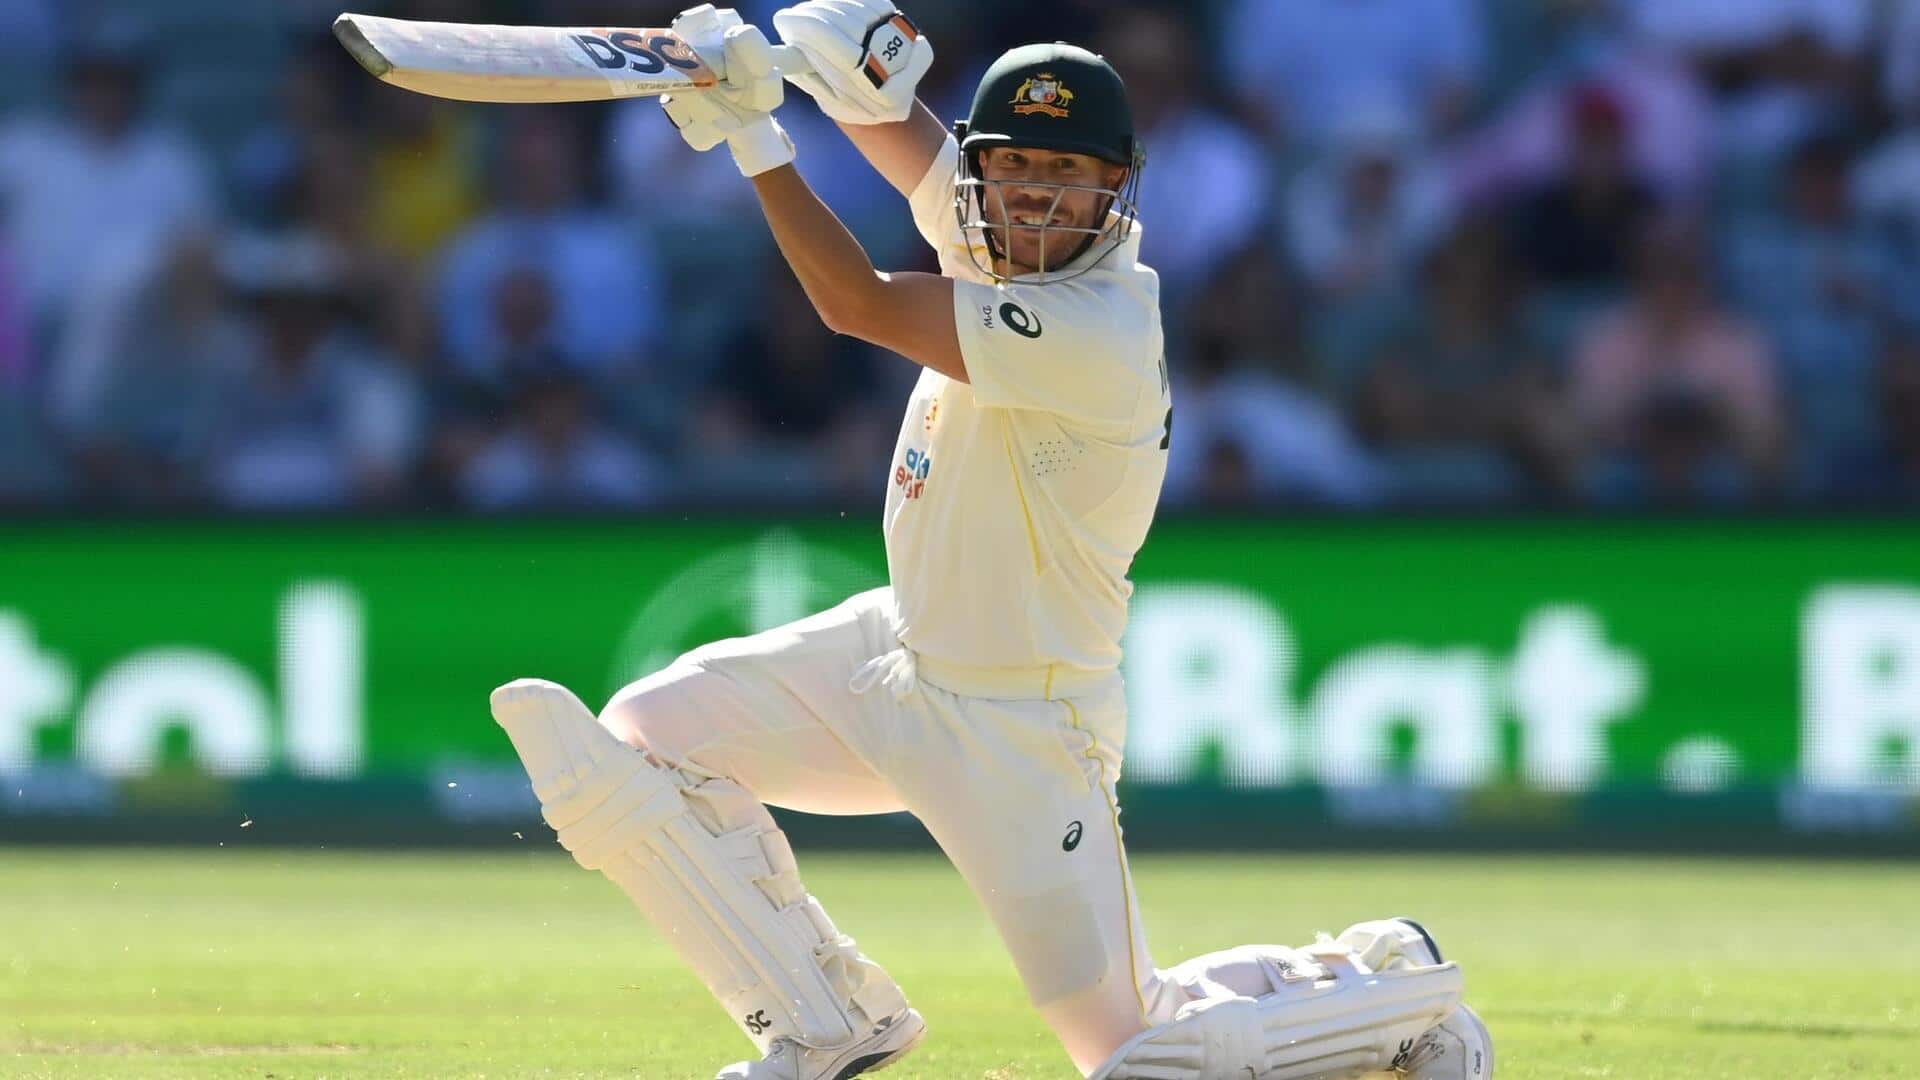 डेविड वार्नर अंतरराष्ट्रीय क्रिकेट में दूसरे सबसे ज्यादा रन बनाने वाले ऑस्ट्रेलियाई बल्लेबाज बने, जानिए आंकड़े